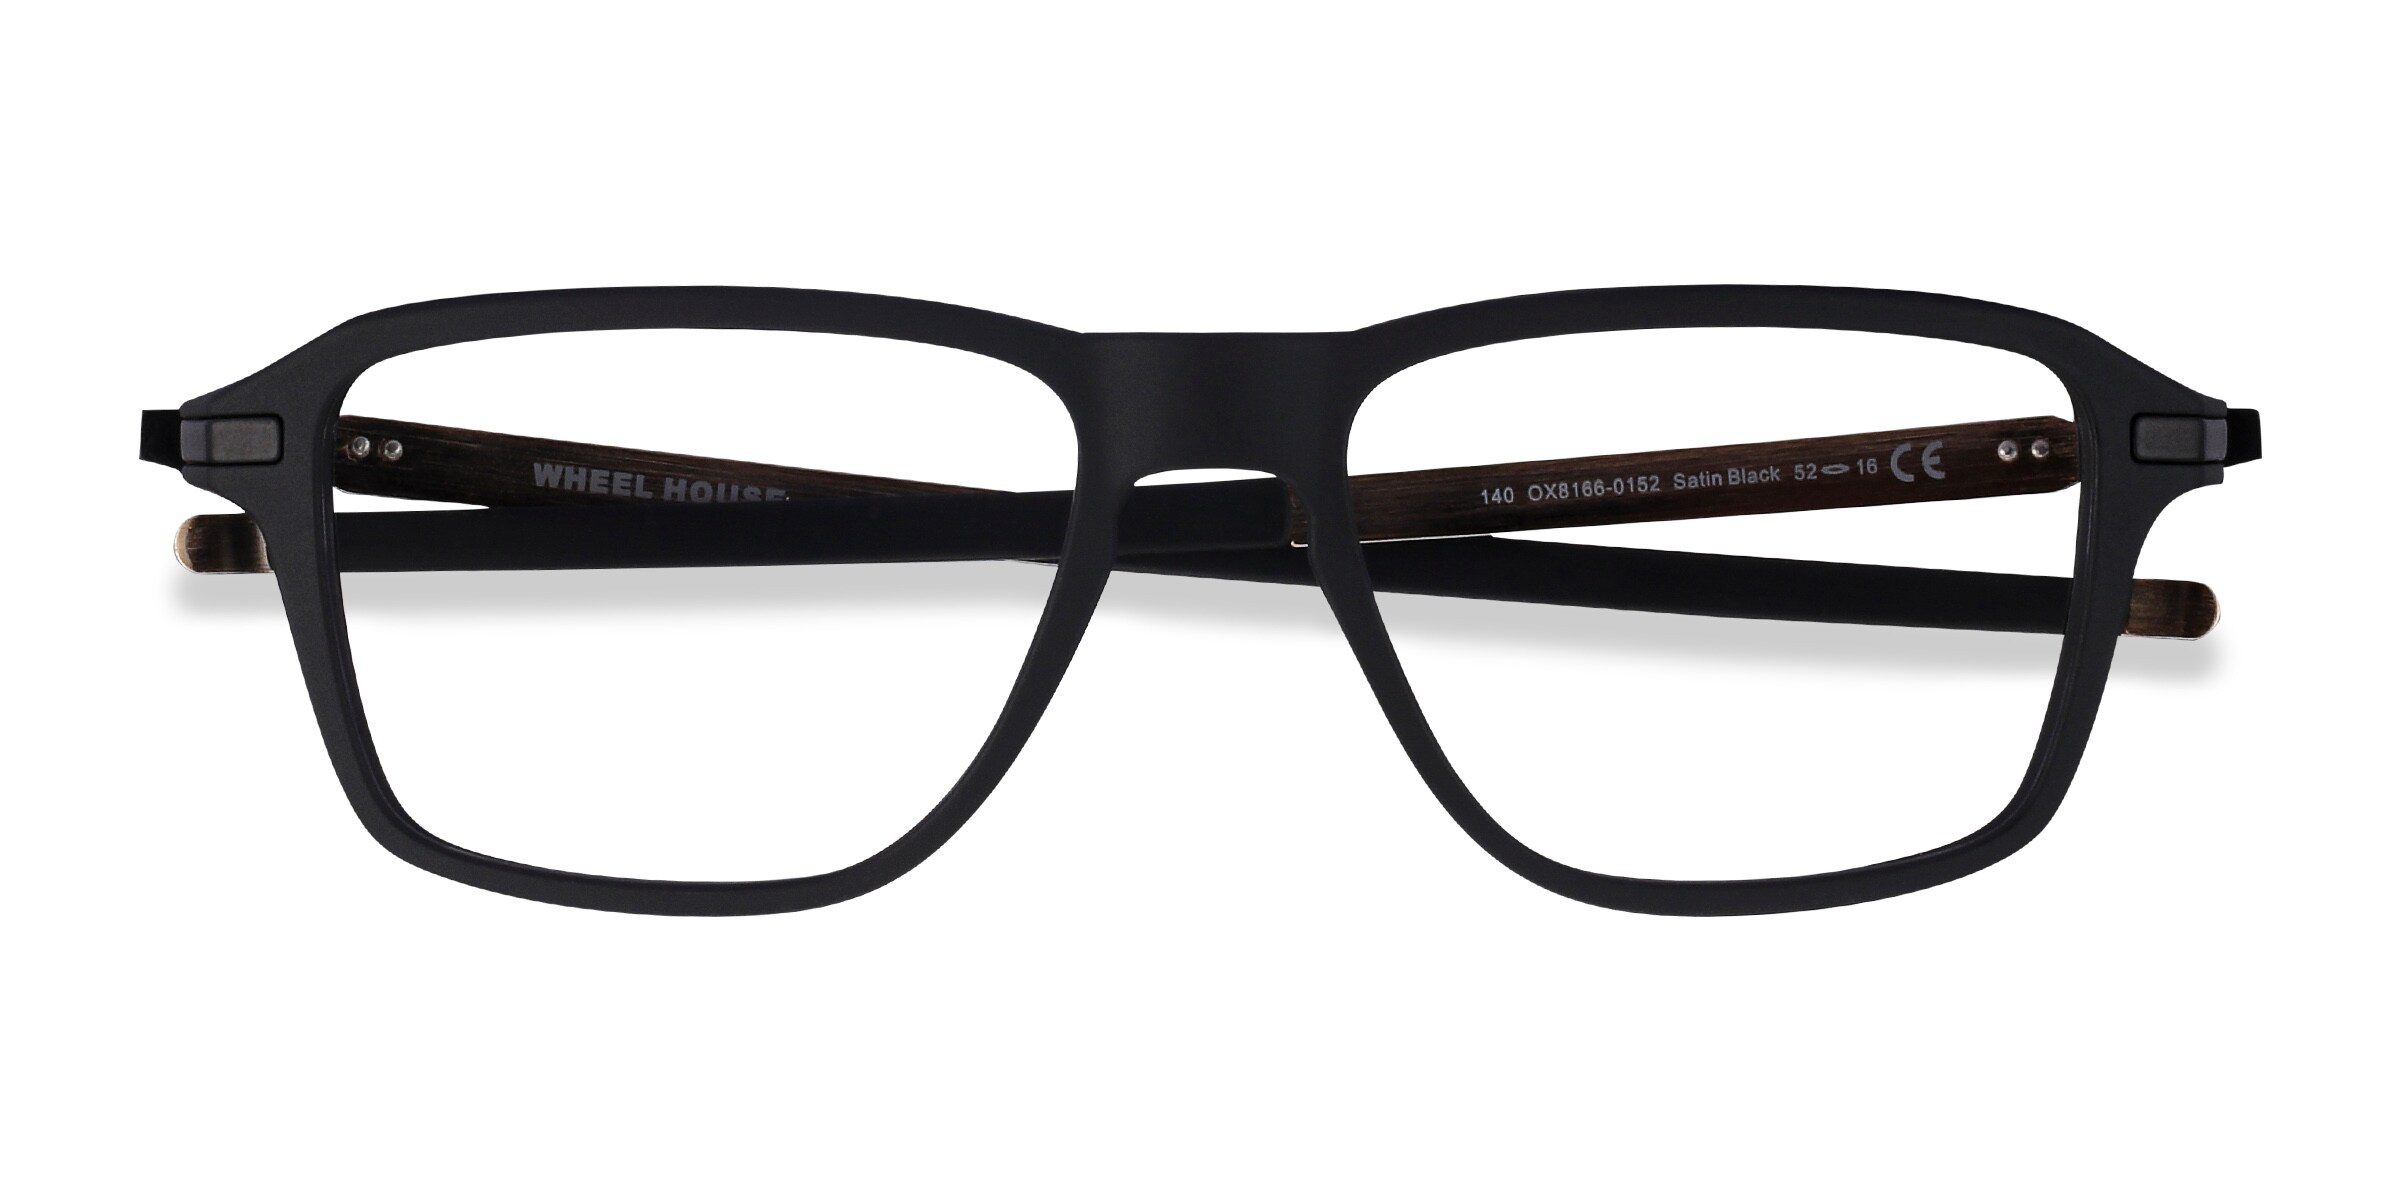 Oakley Wheel House - Rectangle Satin Black Frame Glasses For Men 